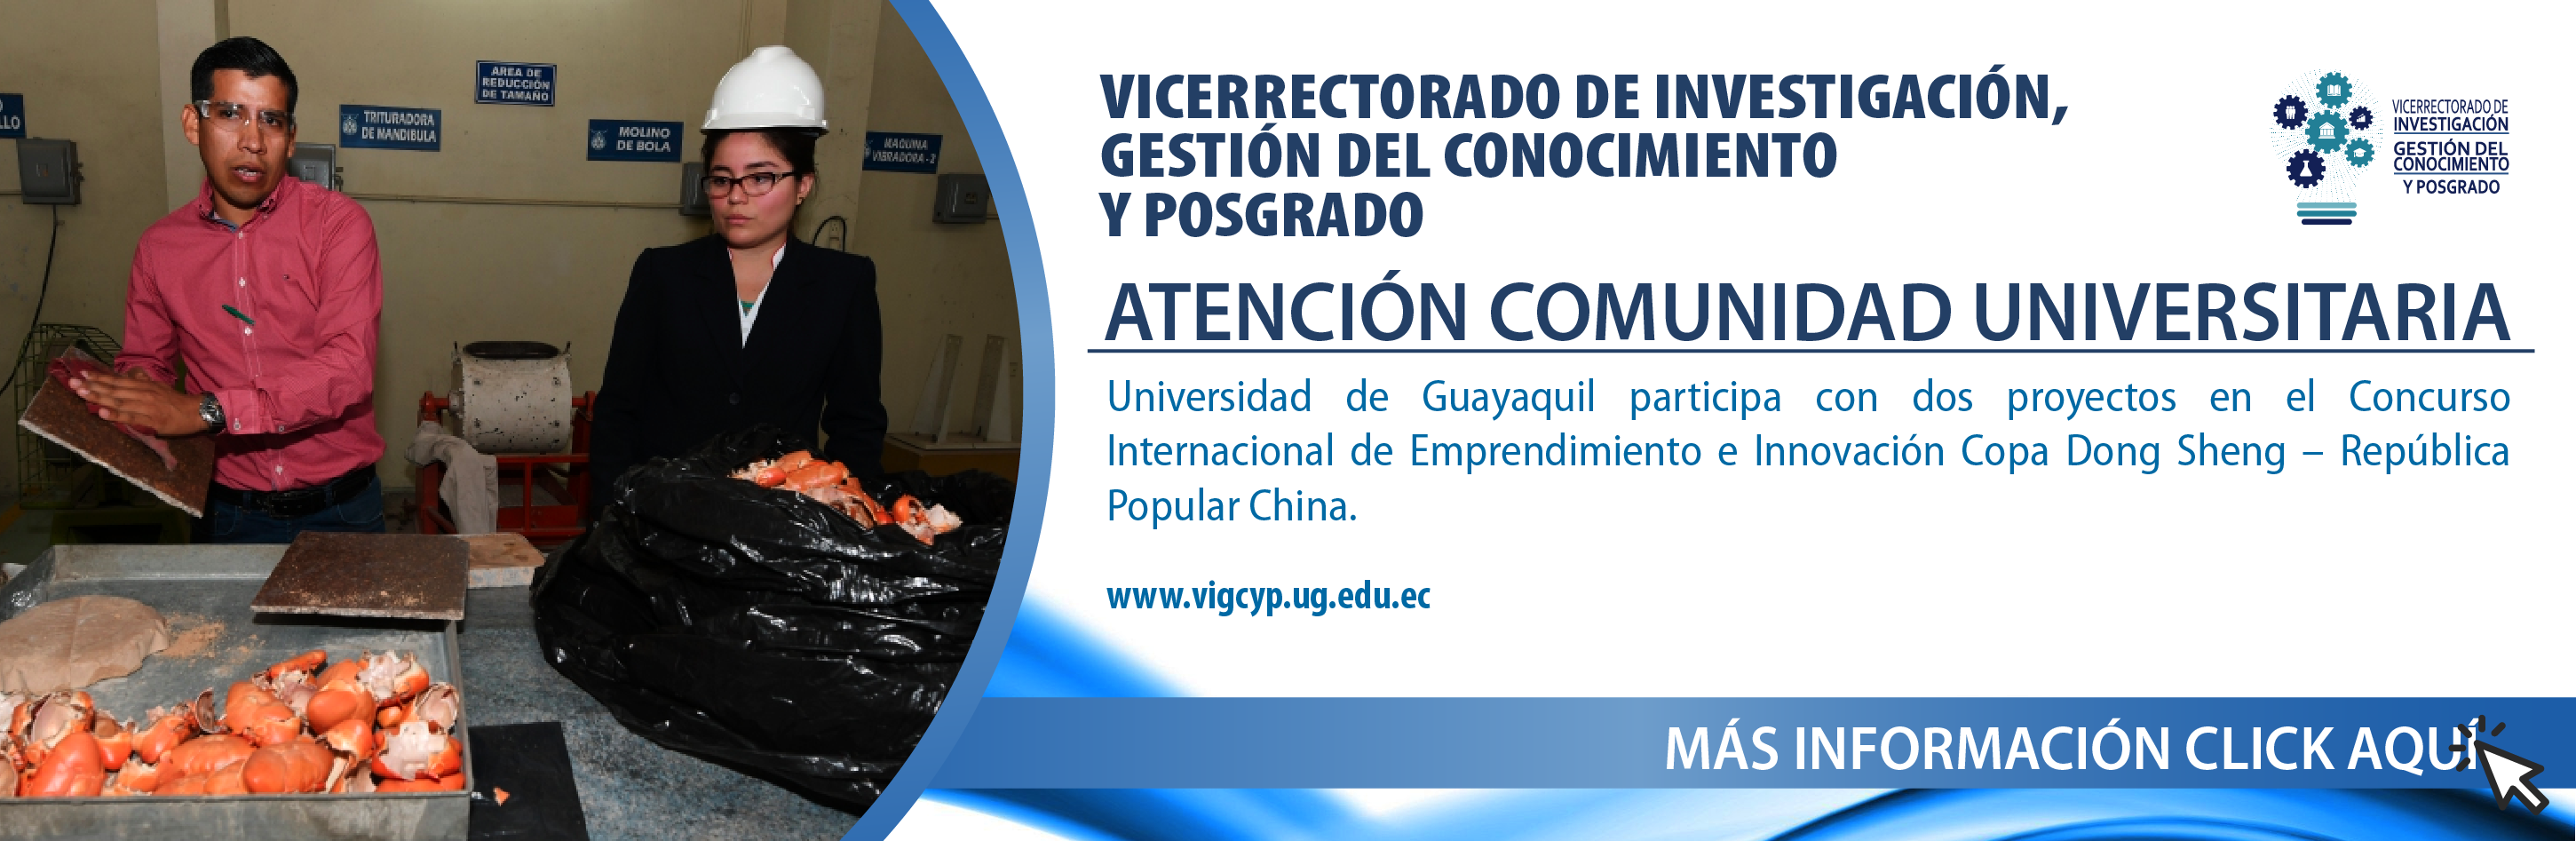 Universidad de Guayaquil participa en el Concurso Internacional de Emprendimiento e Innovación Copa Dong Sheng